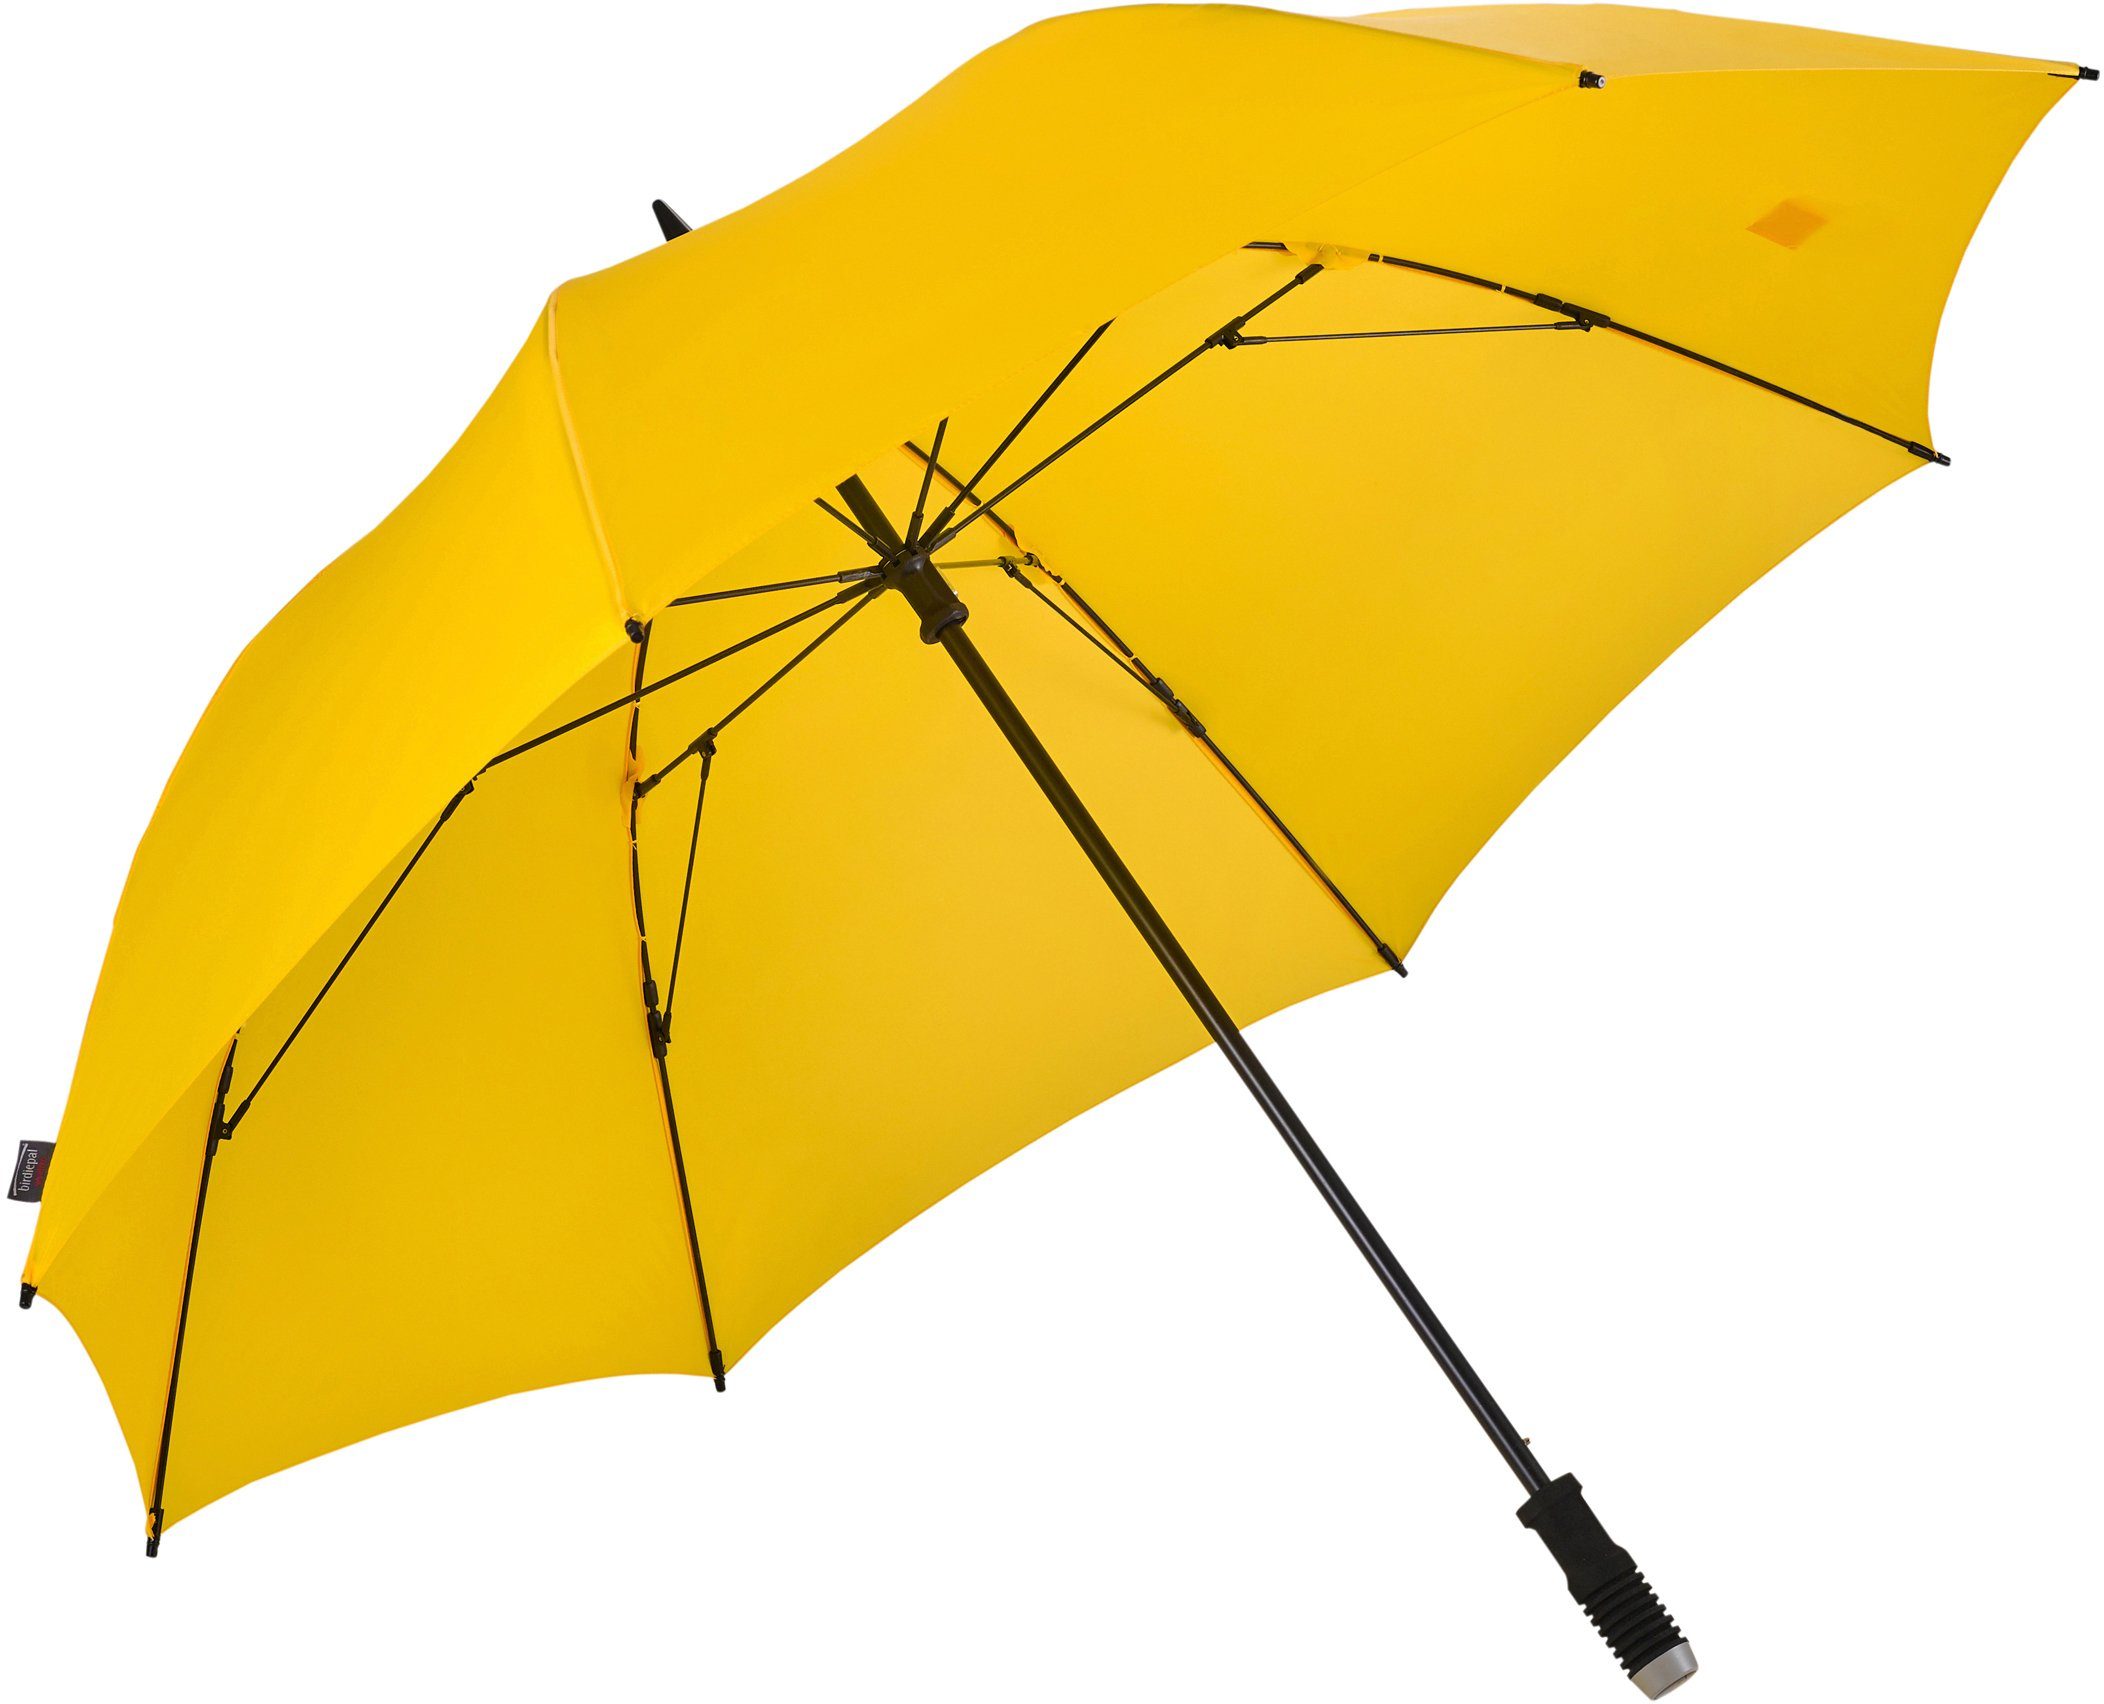 EuroSCHIRM® Partnerschirm birdiepal® windflex, Regenschirm für Zwei, mit extra großem Dach und Windflex-System